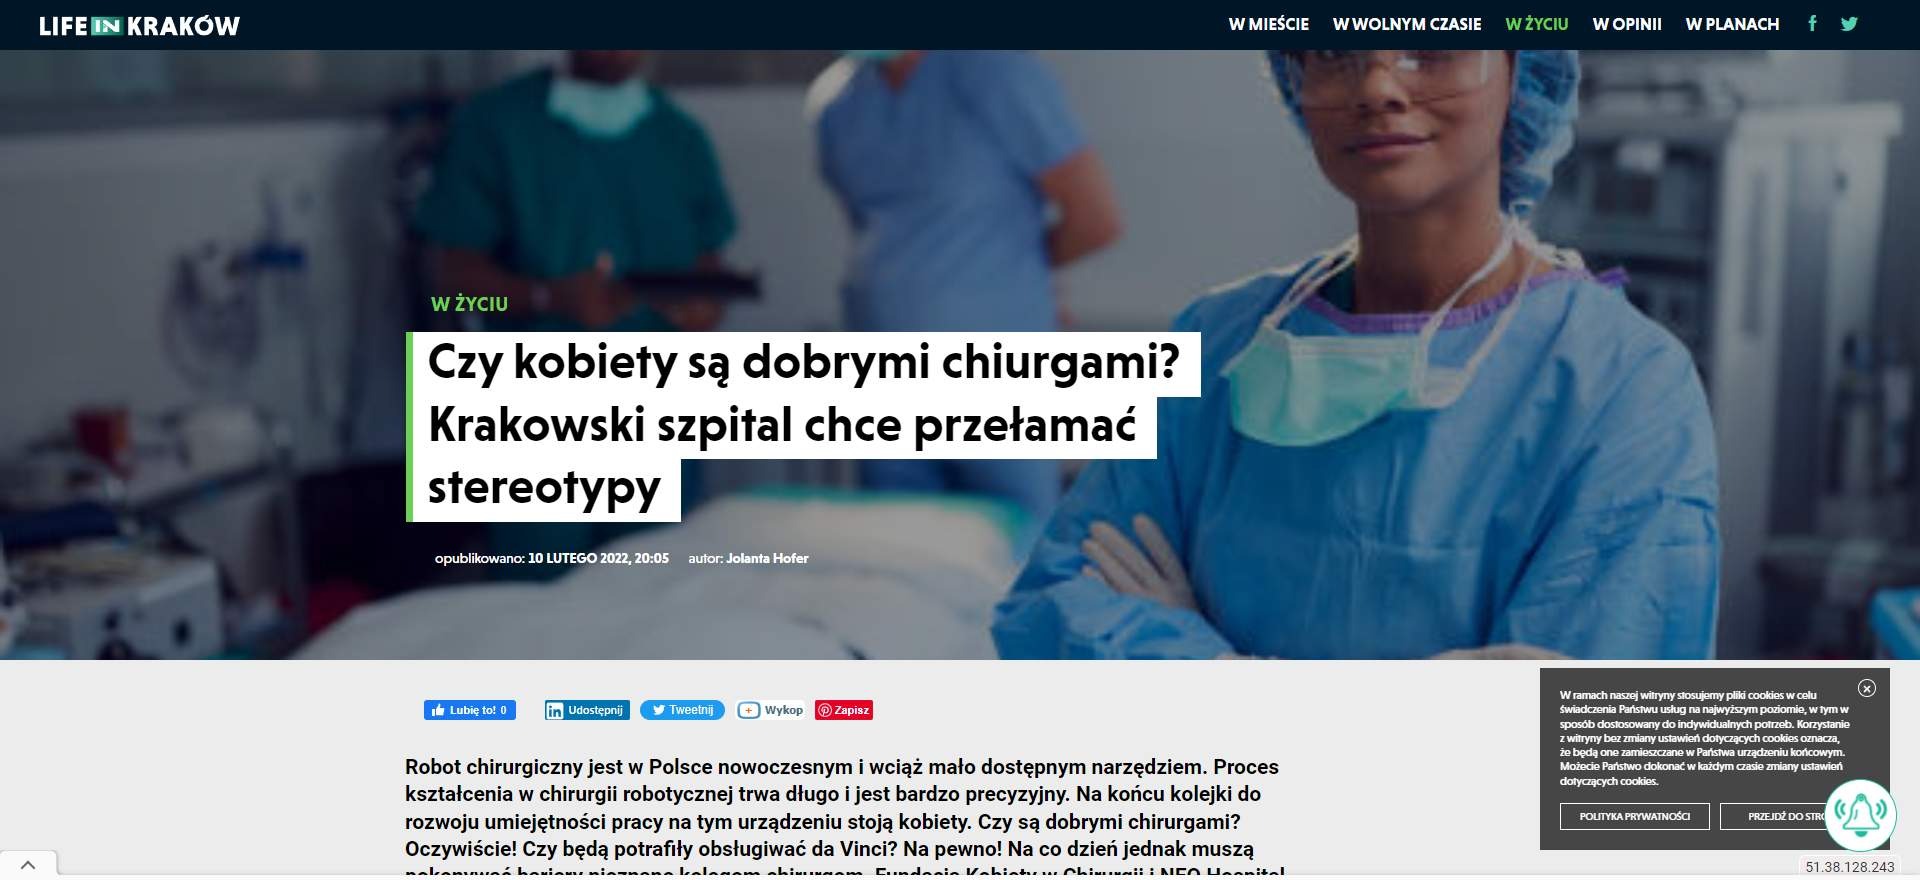 czy kobiety sa dobrymi chiurgami krakowski szpital chce przelamac stereotypy